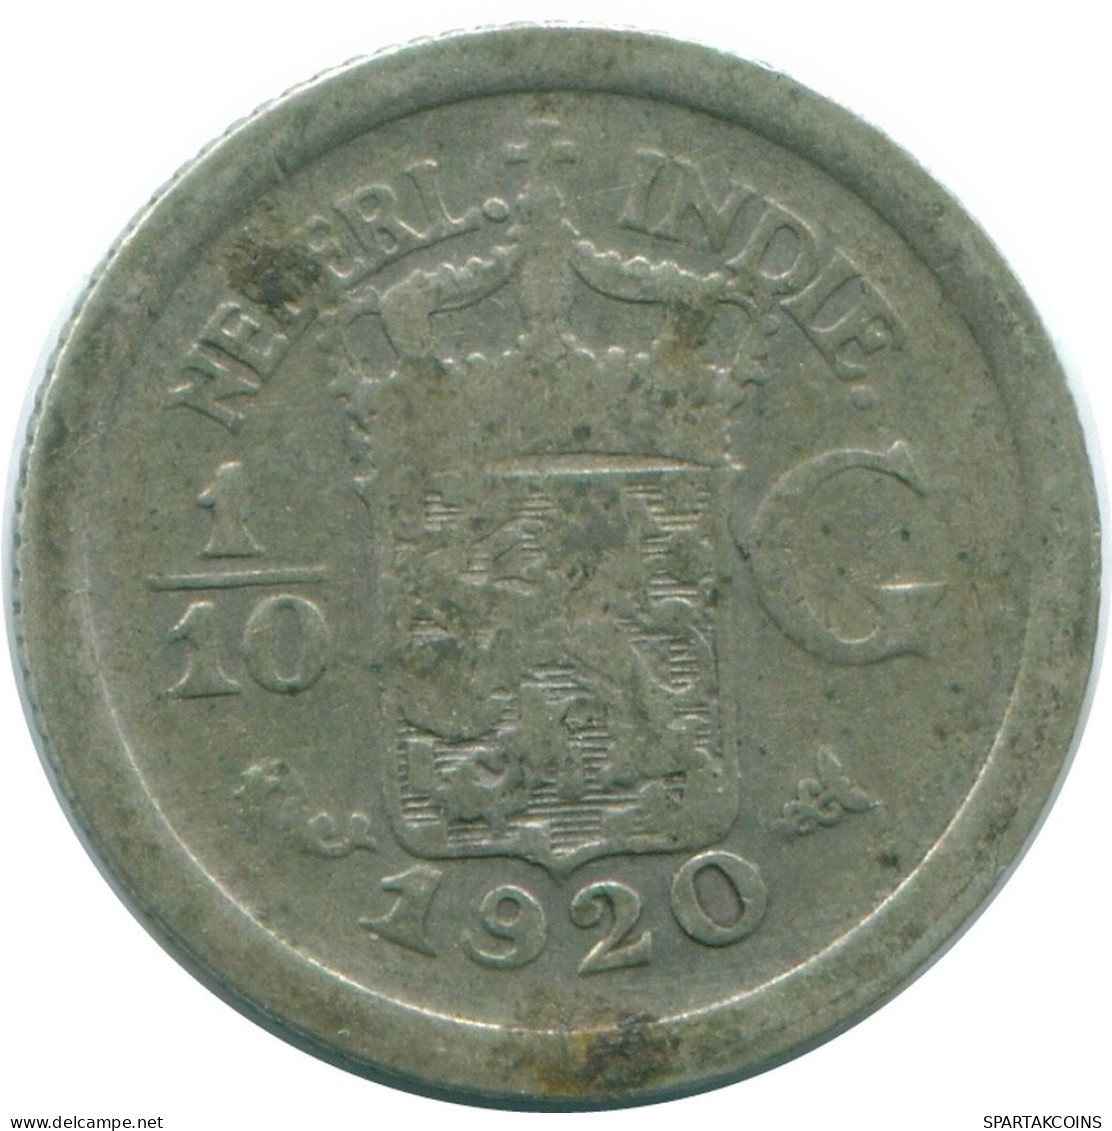 1/10 GULDEN 1920 NIEDERLANDE OSTINDIEN SILBER Koloniale Münze #NL13356.3.D.A - Niederländisch-Indien